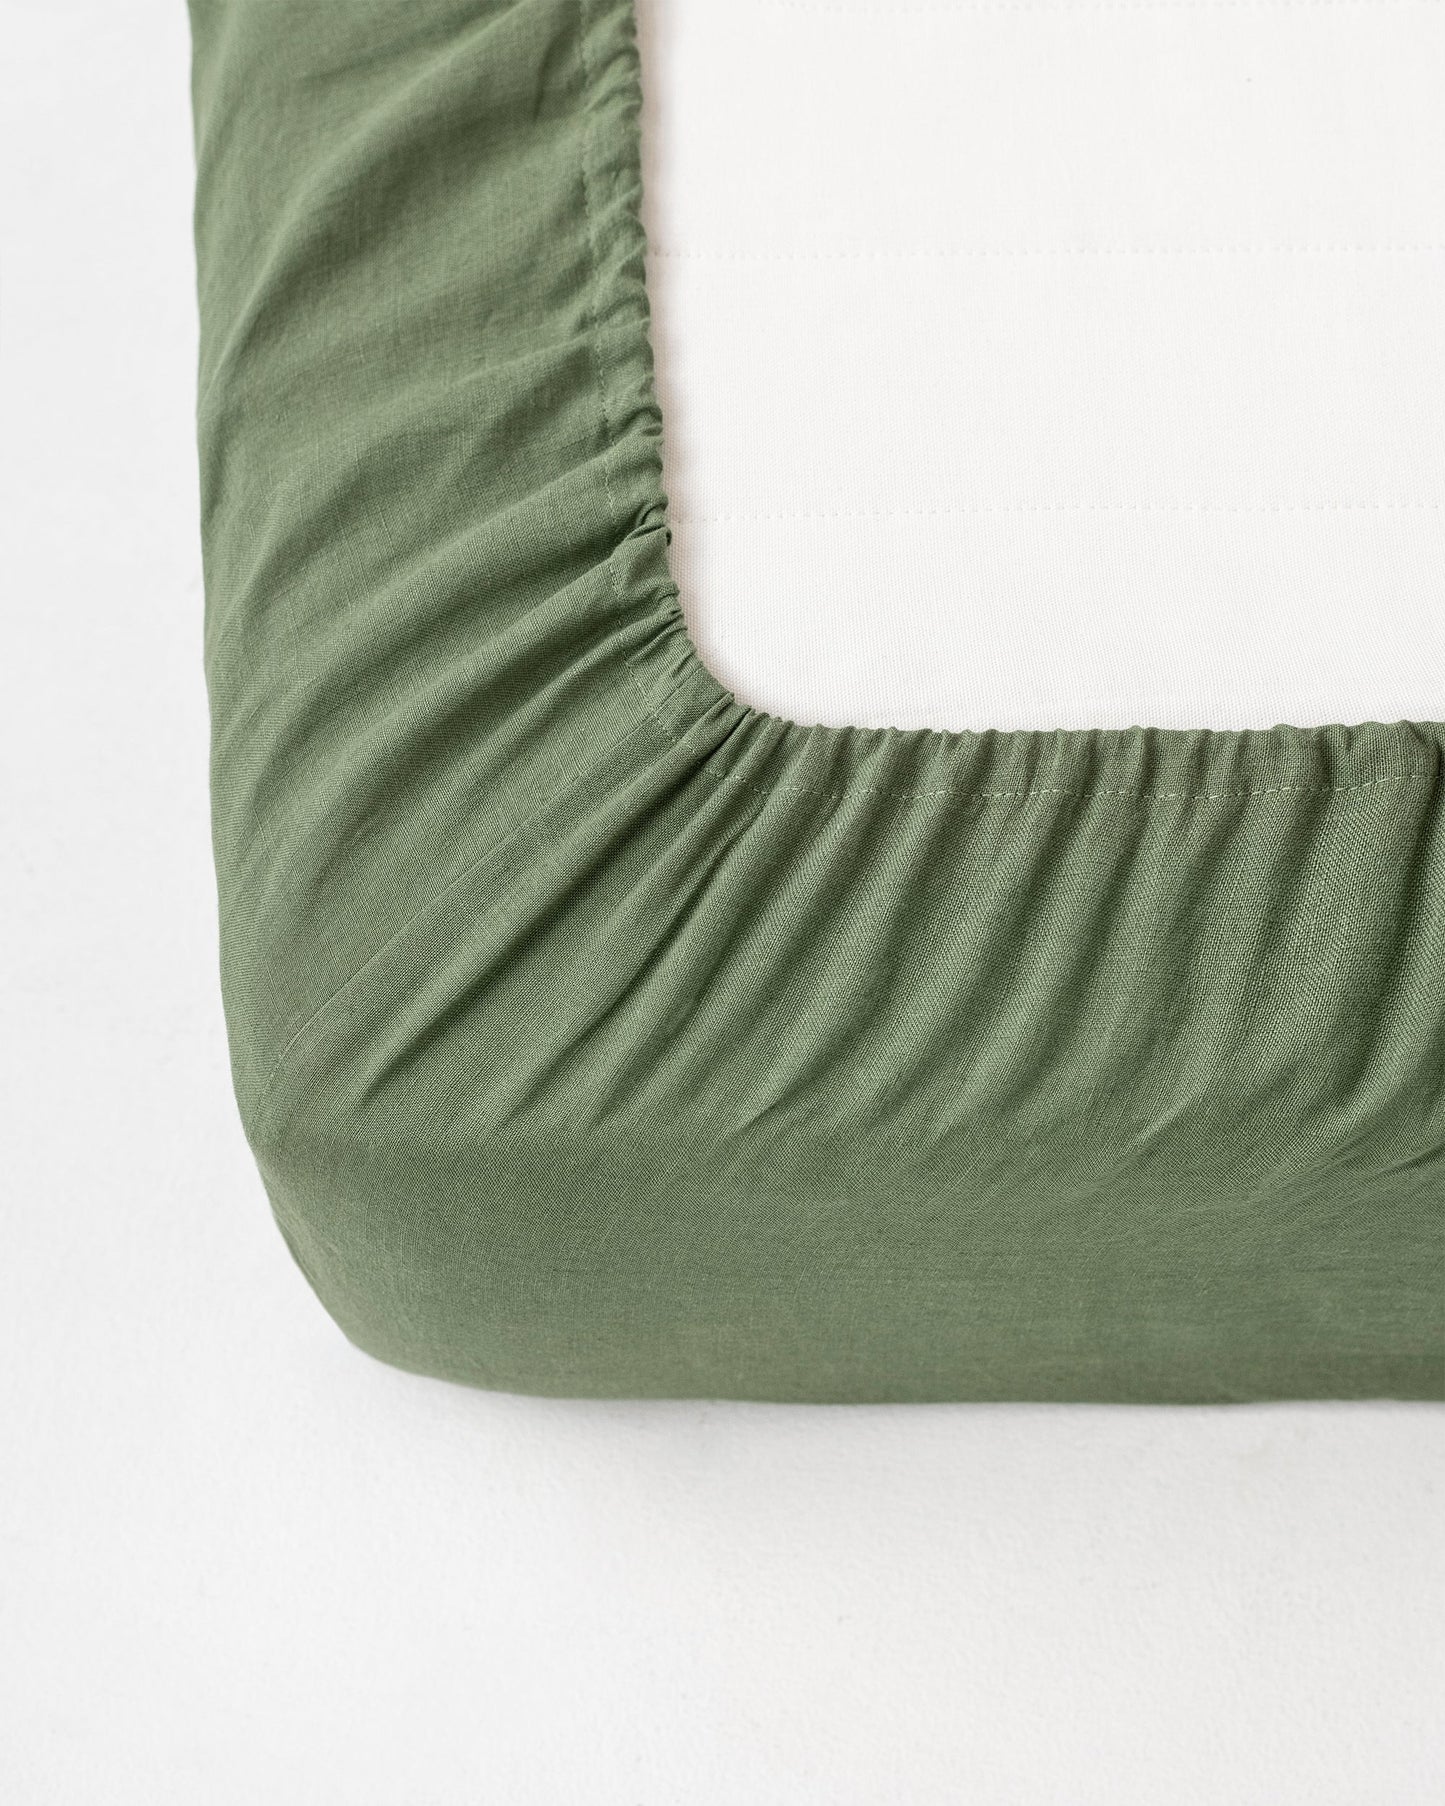 Custom size Forest green linen fitted sheet - MagicLinen